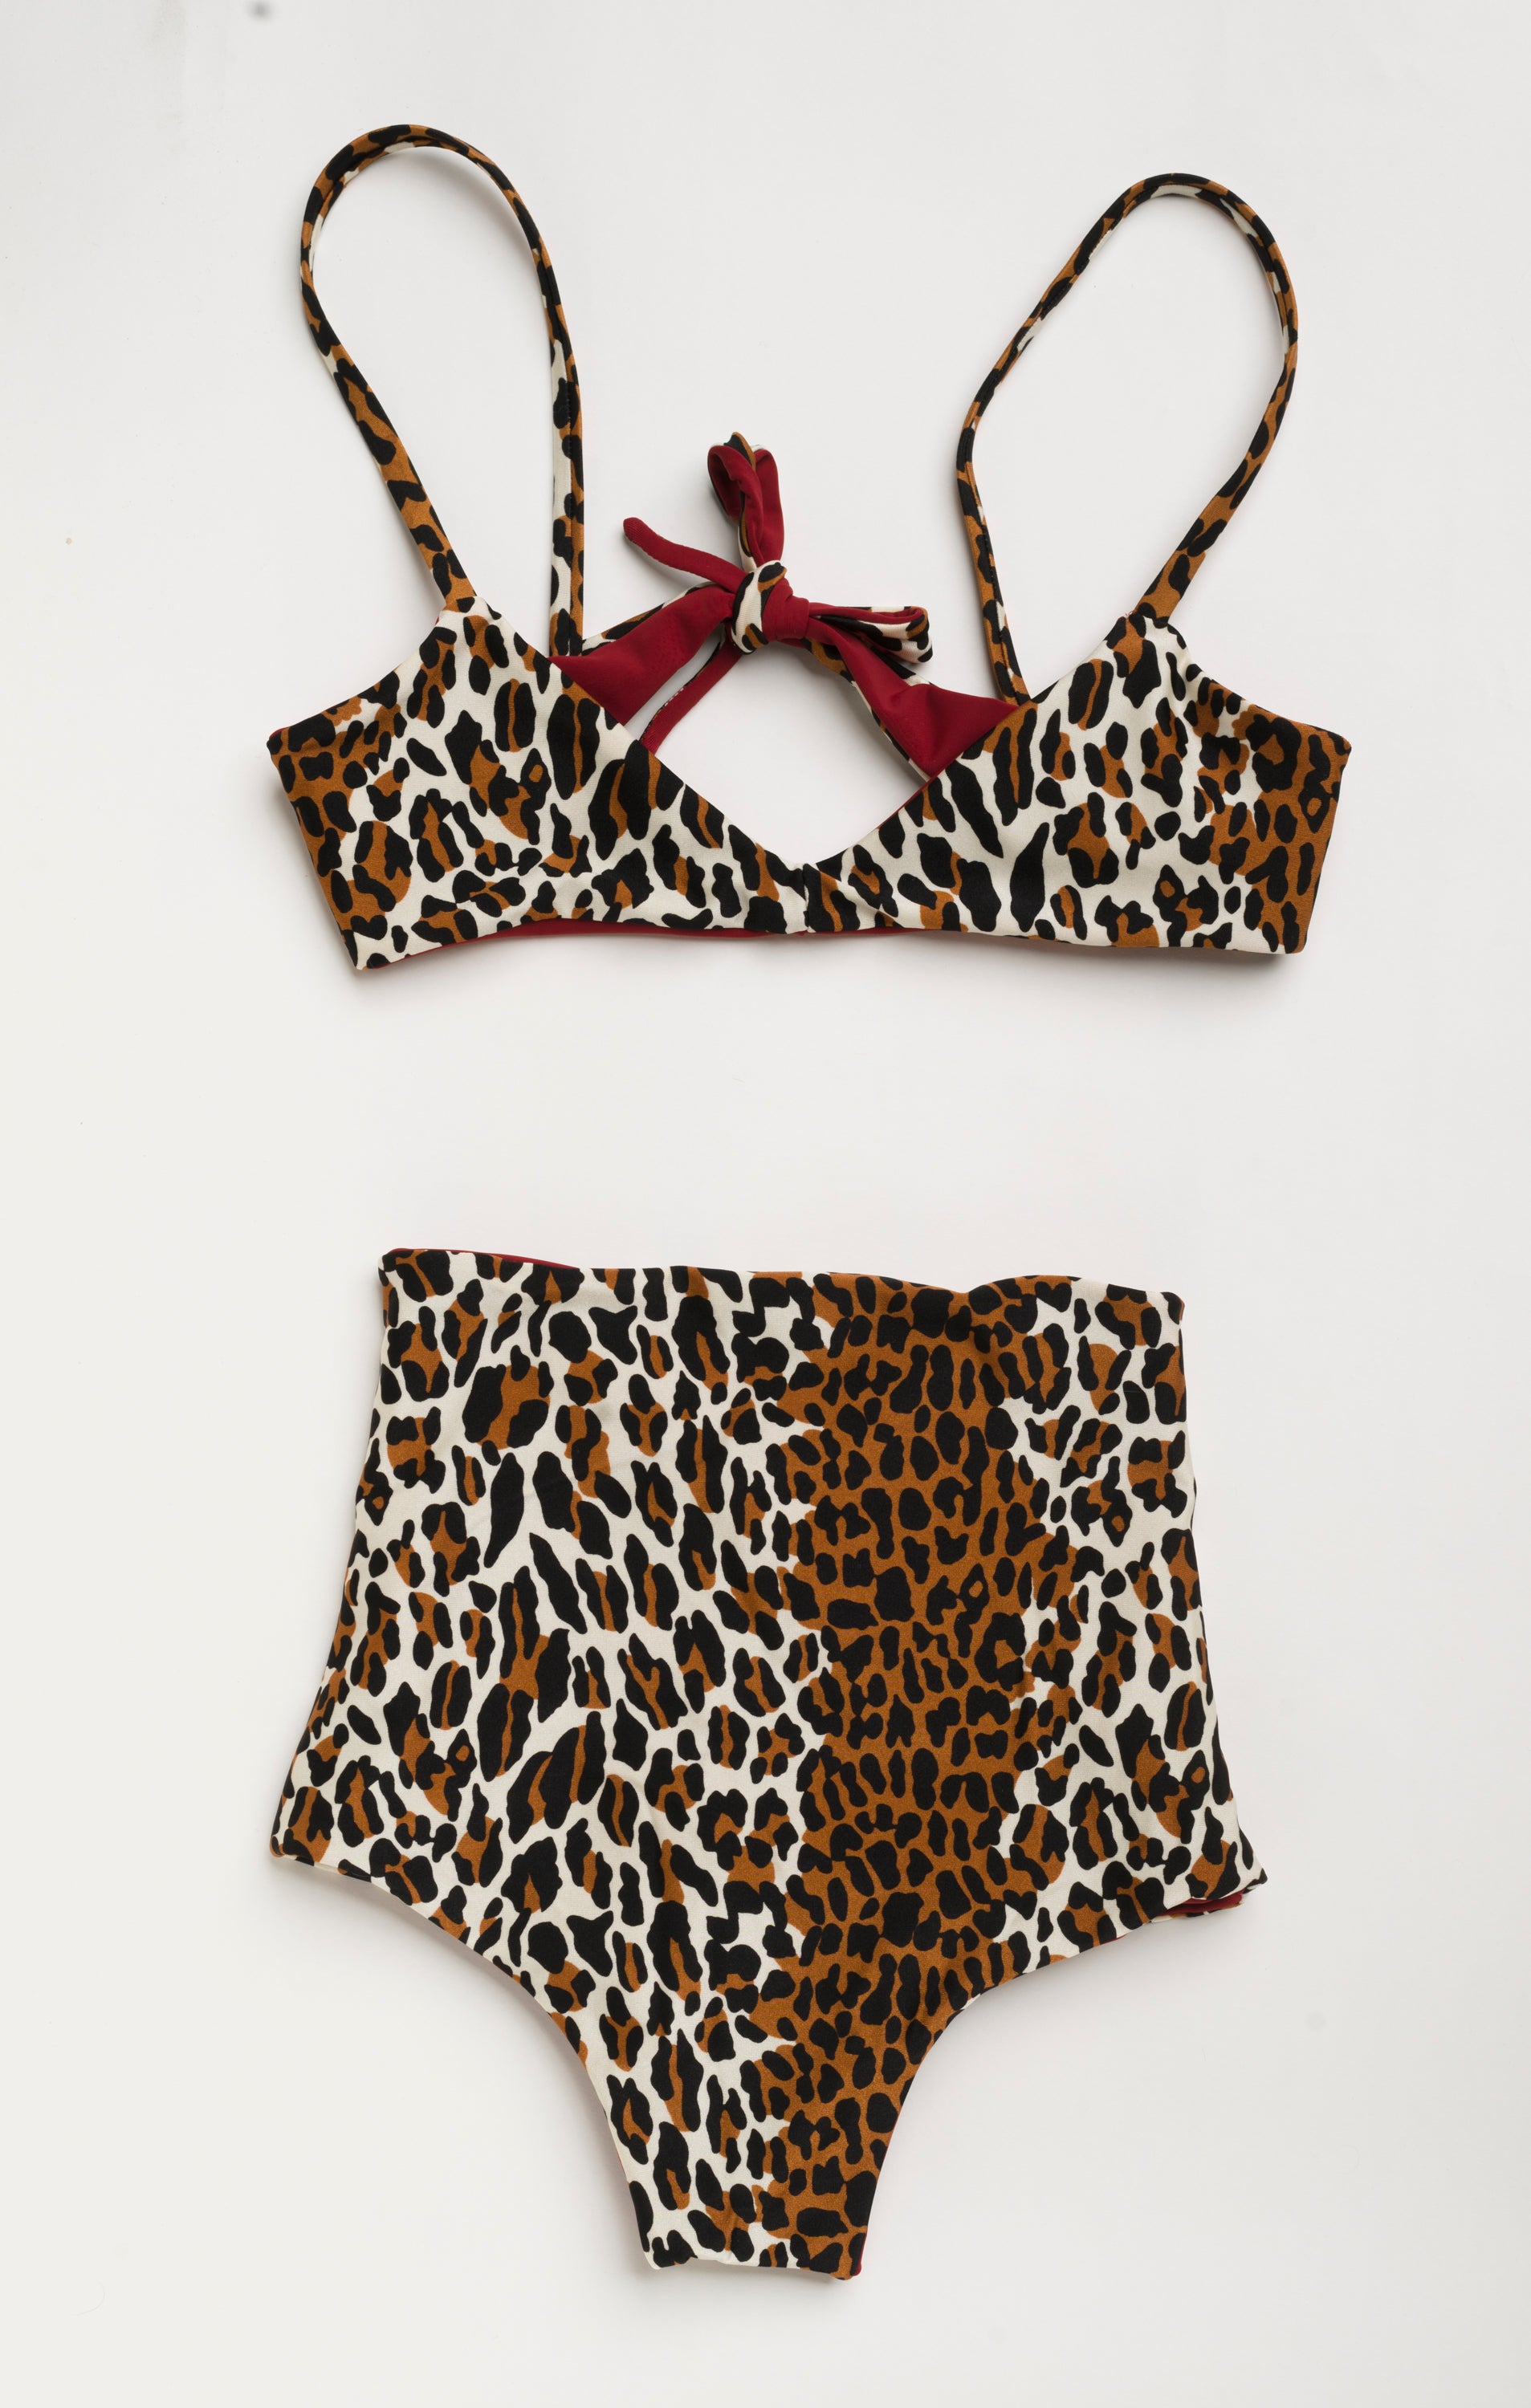 leopard high waisted bikini 